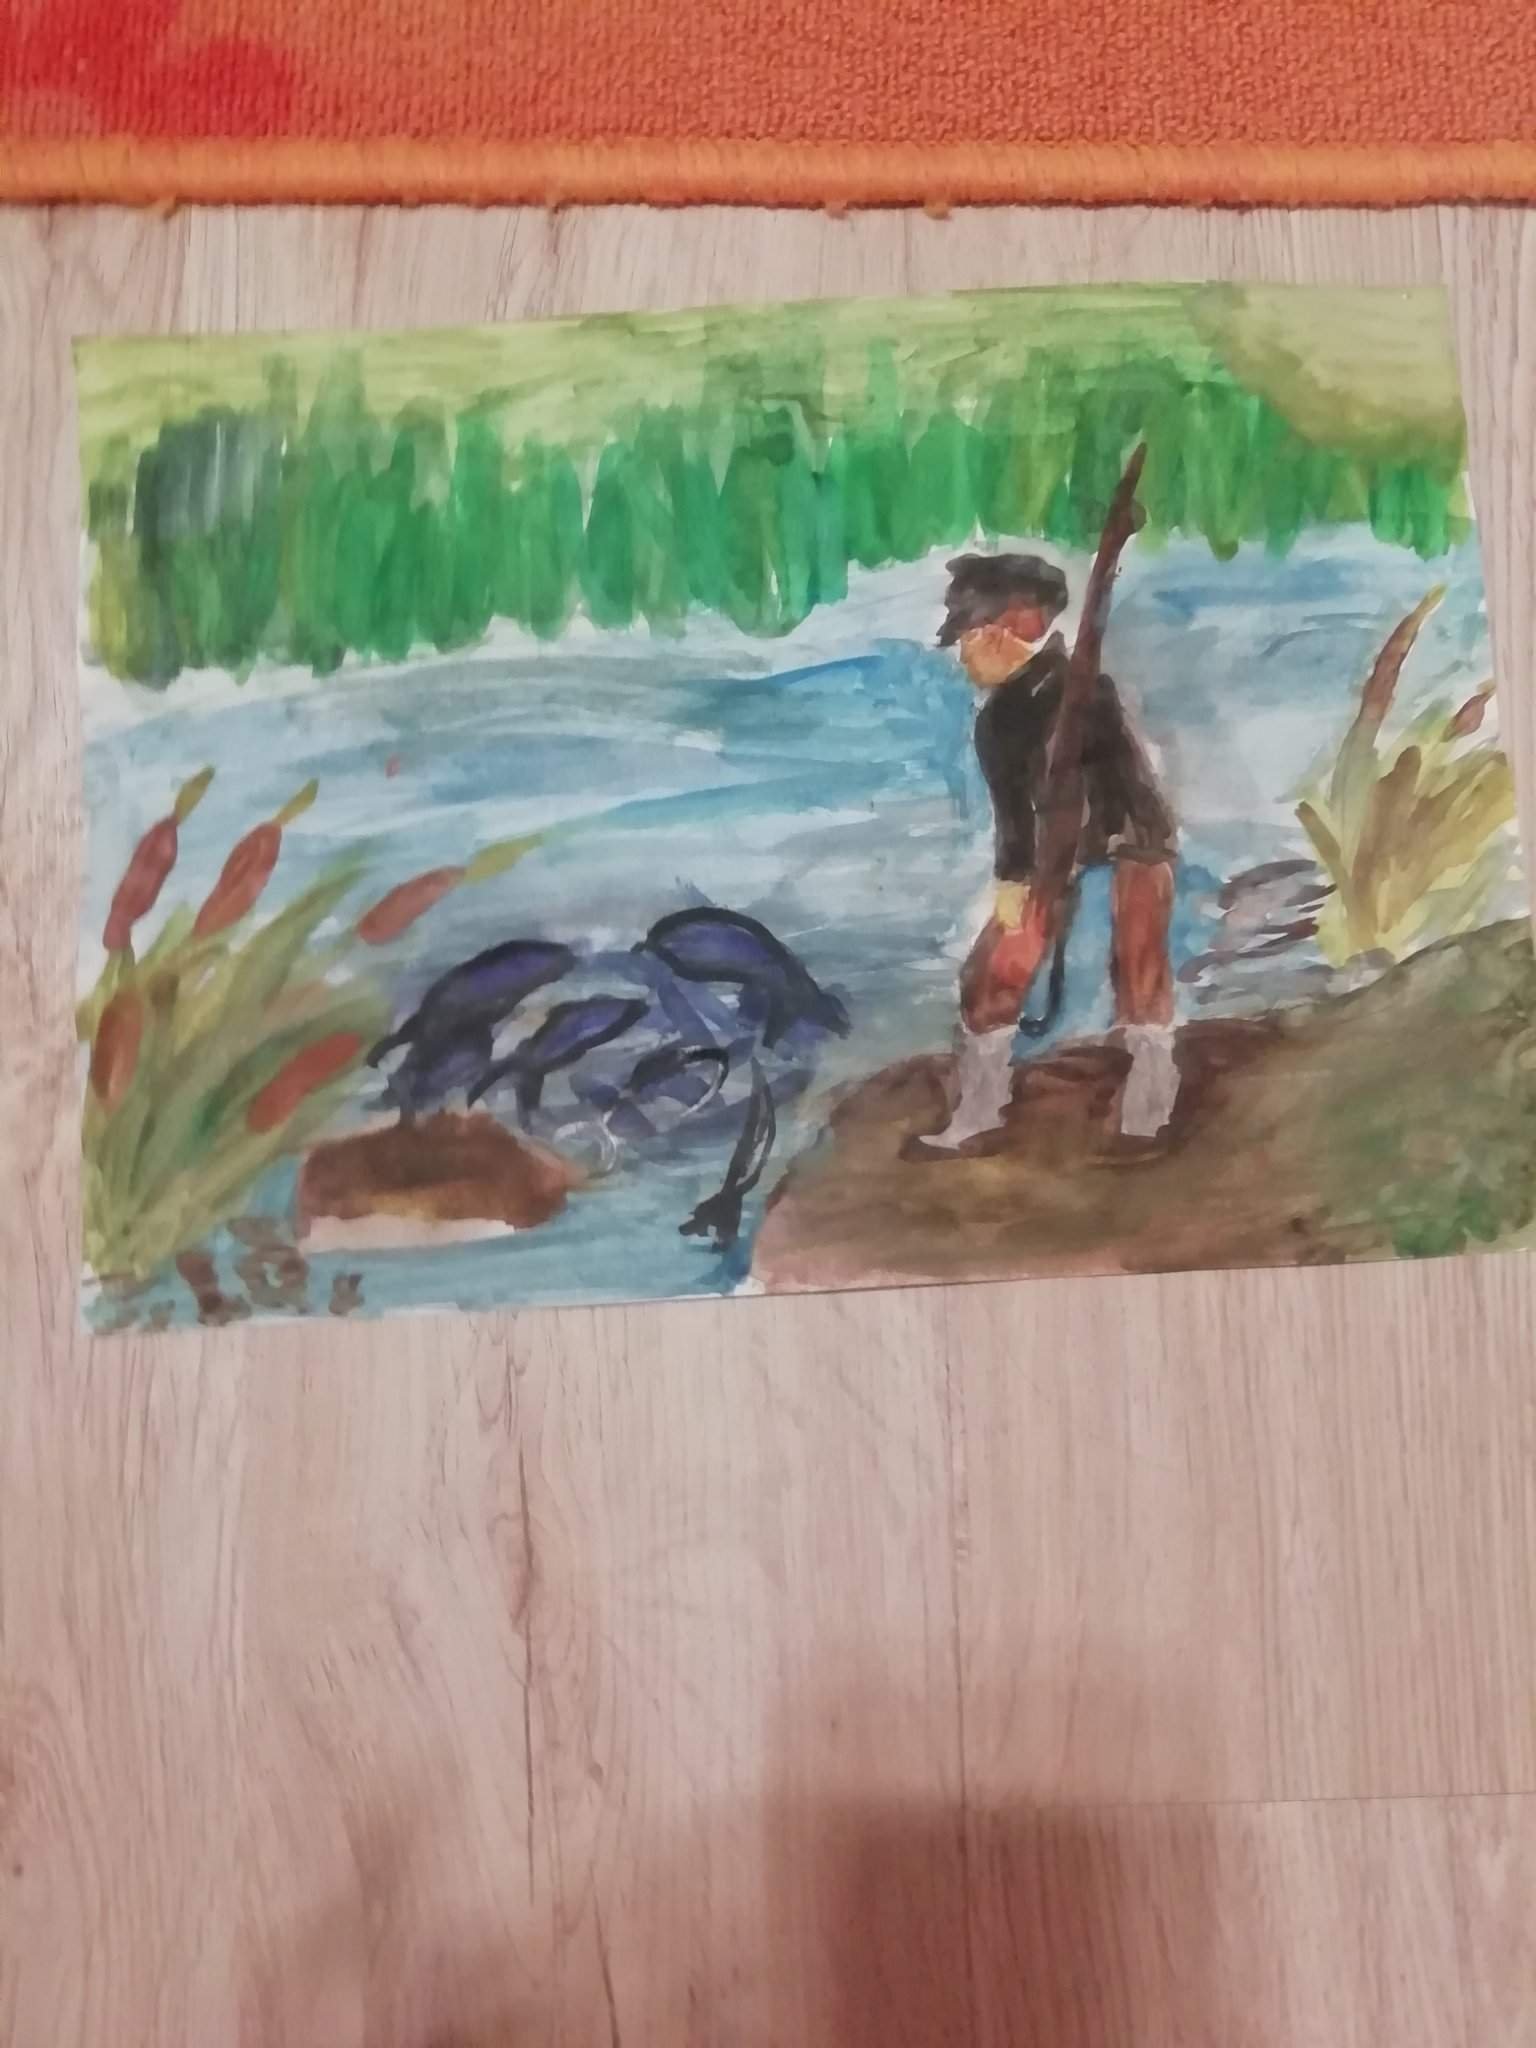 Иллюстрация по литературе 5 класс васюткино озеро. Иллюстрация к произведению Васюткино озеро. Нарисовать иллюстрацию к рассказу Васюткино озеро. Иллюстрация к рассказу Васюткино озеро. Иллюстрация к рассказу "Васюткина озеро.